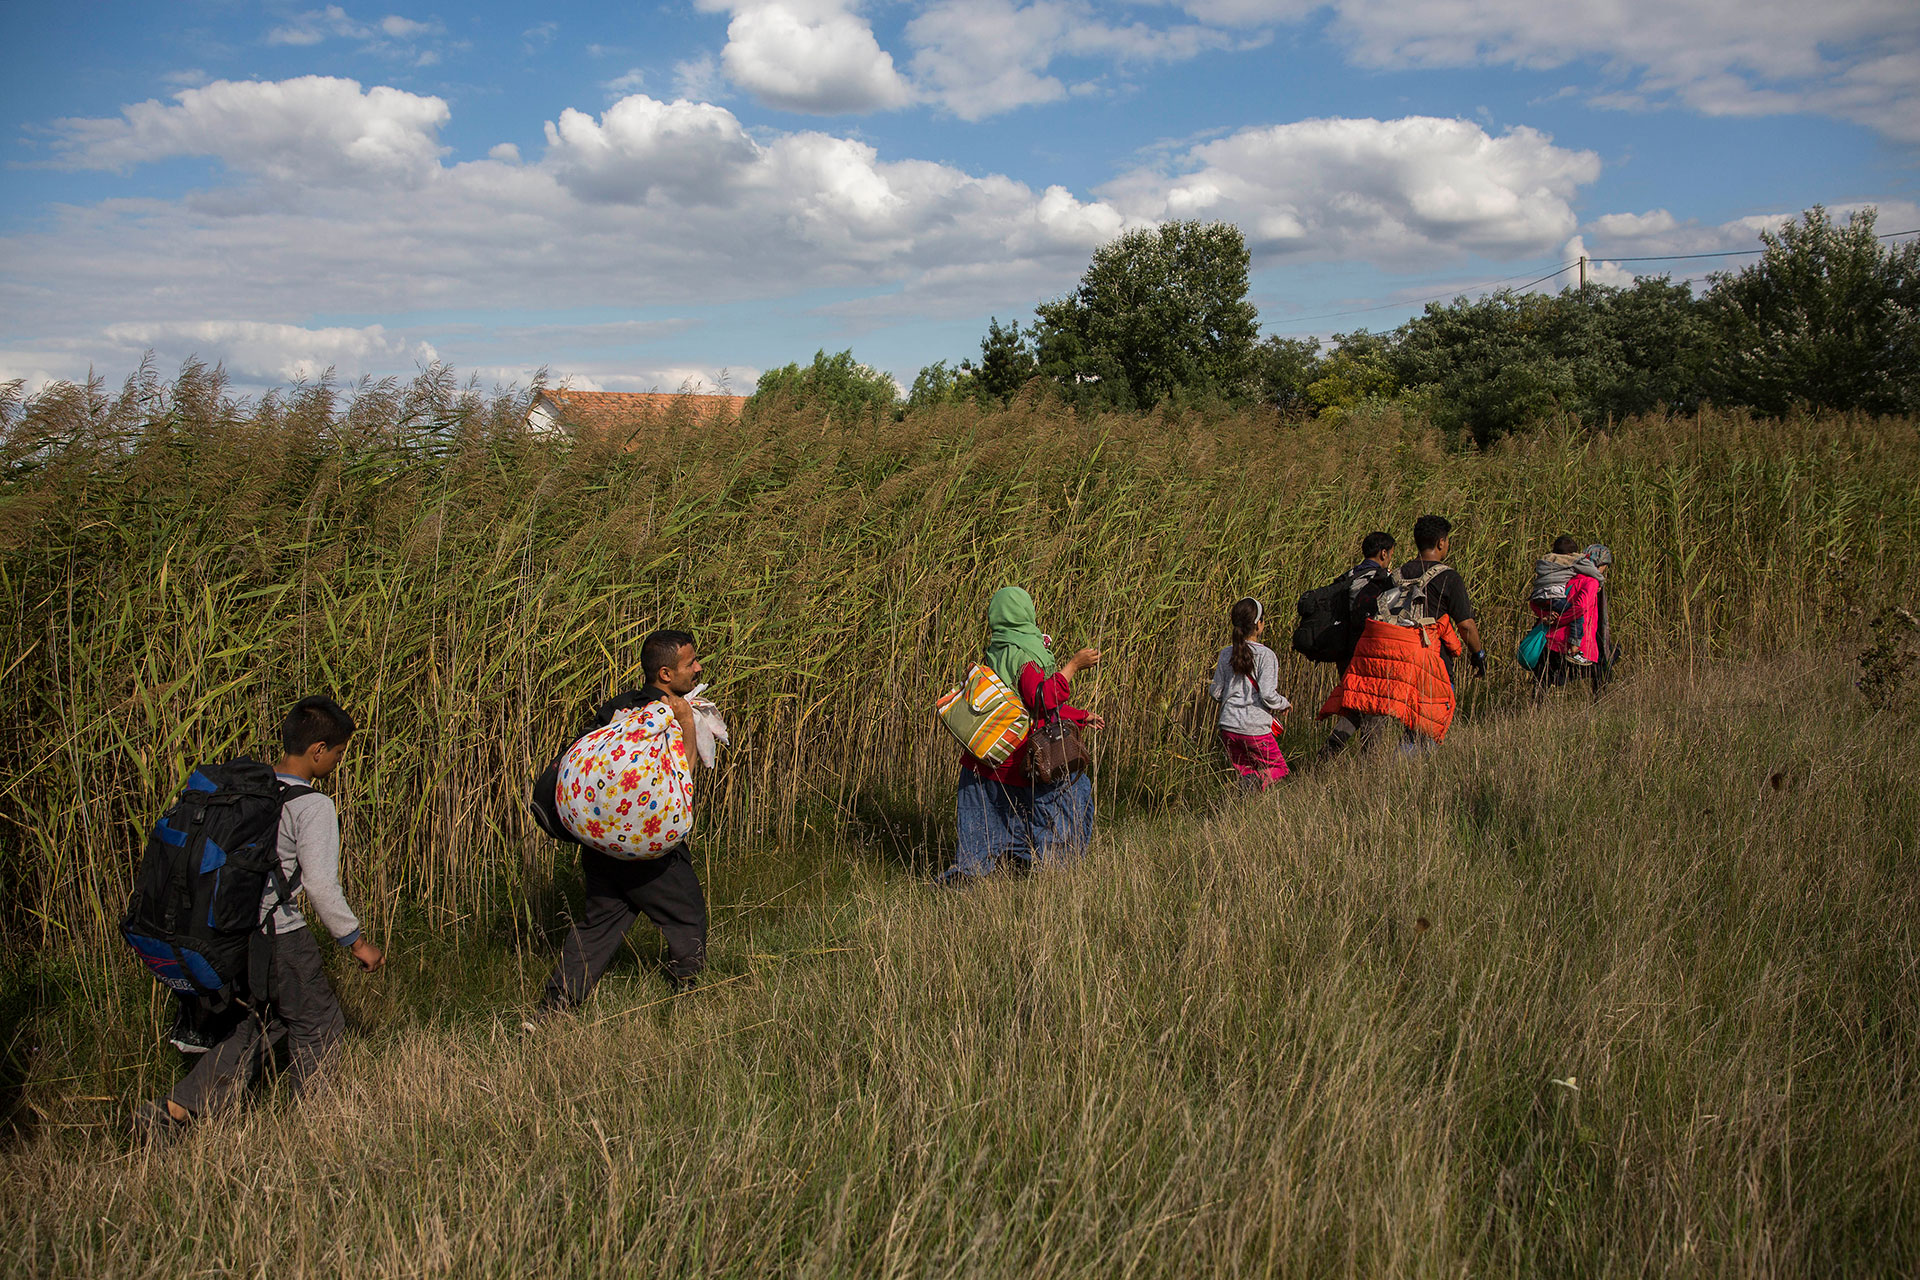 Una familia de refugiados camina entre campos de cultivo en el pueblo húngaro de Roszke, fronterizo con Serbia, después de escapar de un cerco policial. (Roszke. Hungría. 08/09/2015).